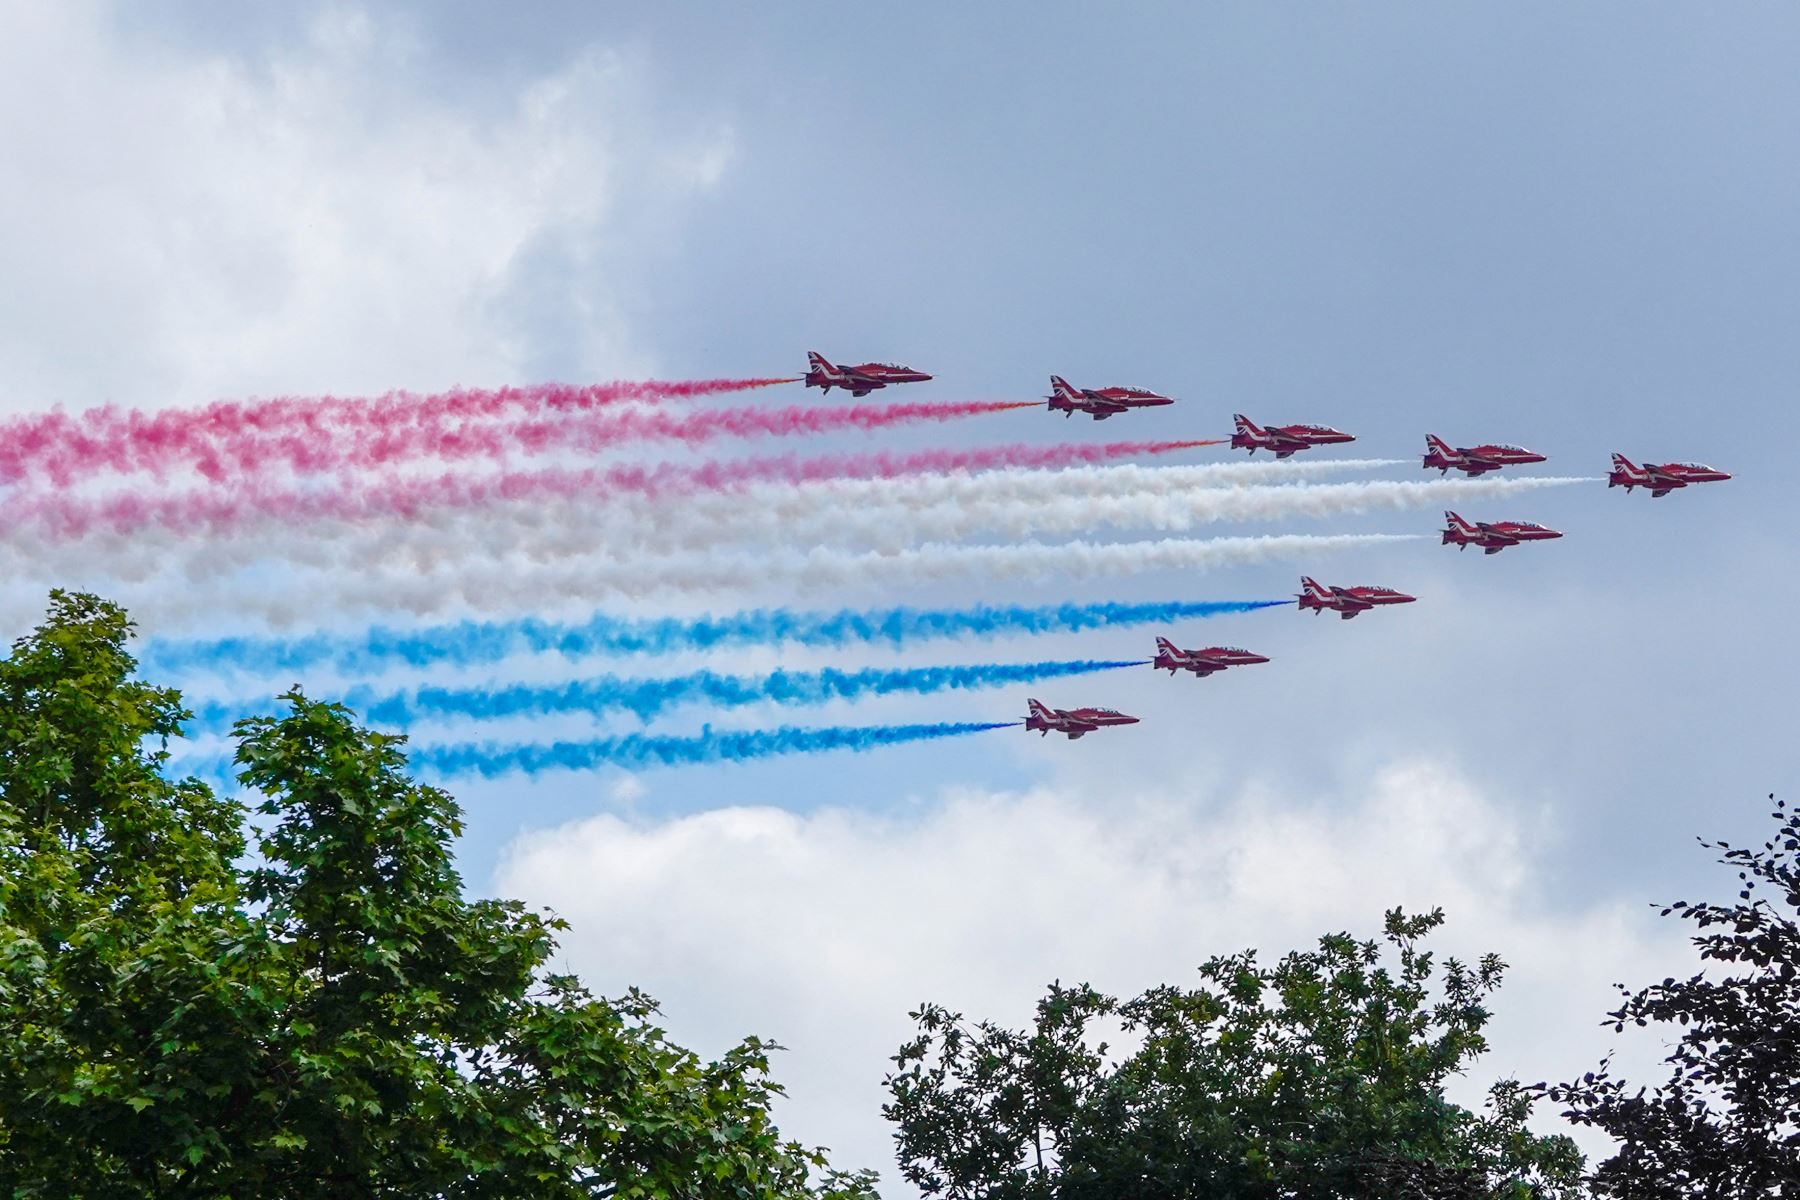 El equipo acrobático de la Royal Air Force, vuelan en formación durante un vuelo especial desde el balcón del Palacio de Buckingham después del desfile del cumpleaños de la reina, Trooping the Colour, como parte de las celebraciones del jubileo de platino de la reina Isabel II, en Londres. Foto: AFP